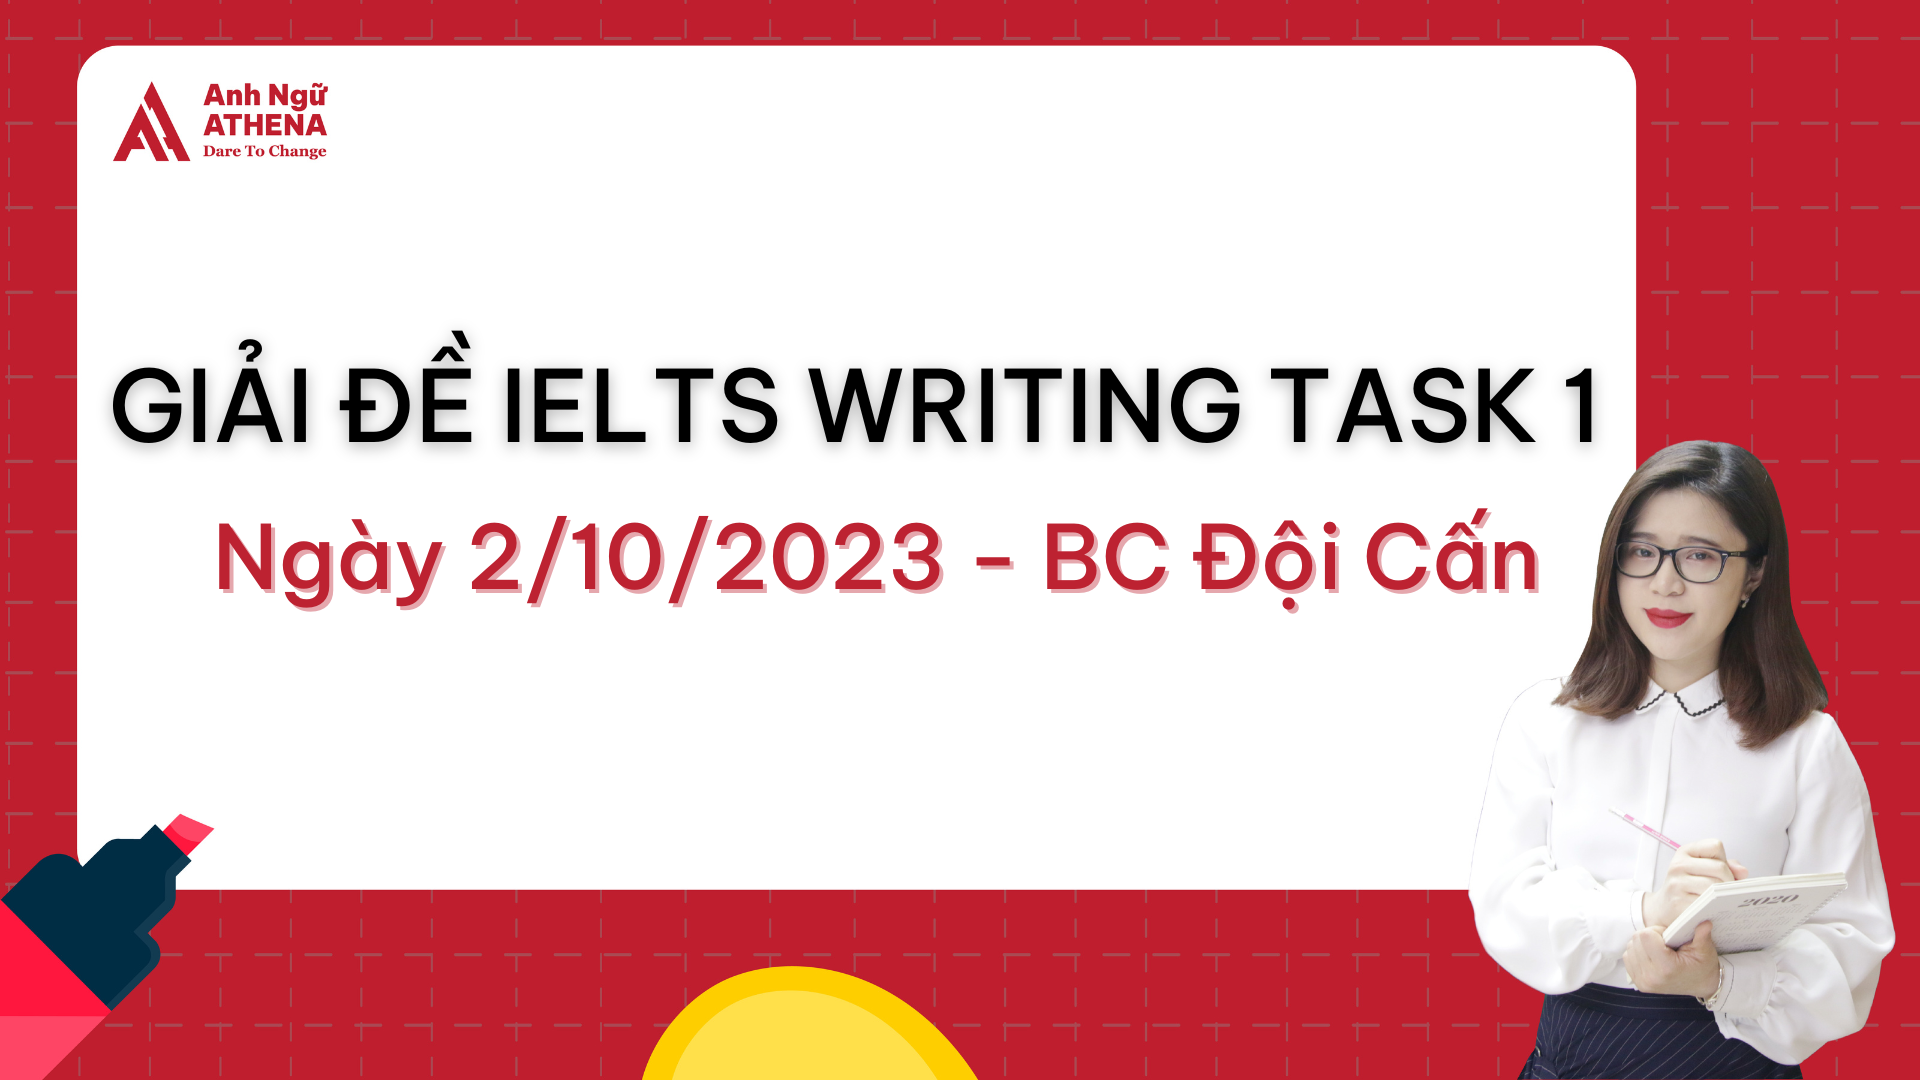 Giải đề IELTS Writing Task 1 Map ngày 2/10/2023 - BC Đội Cấn